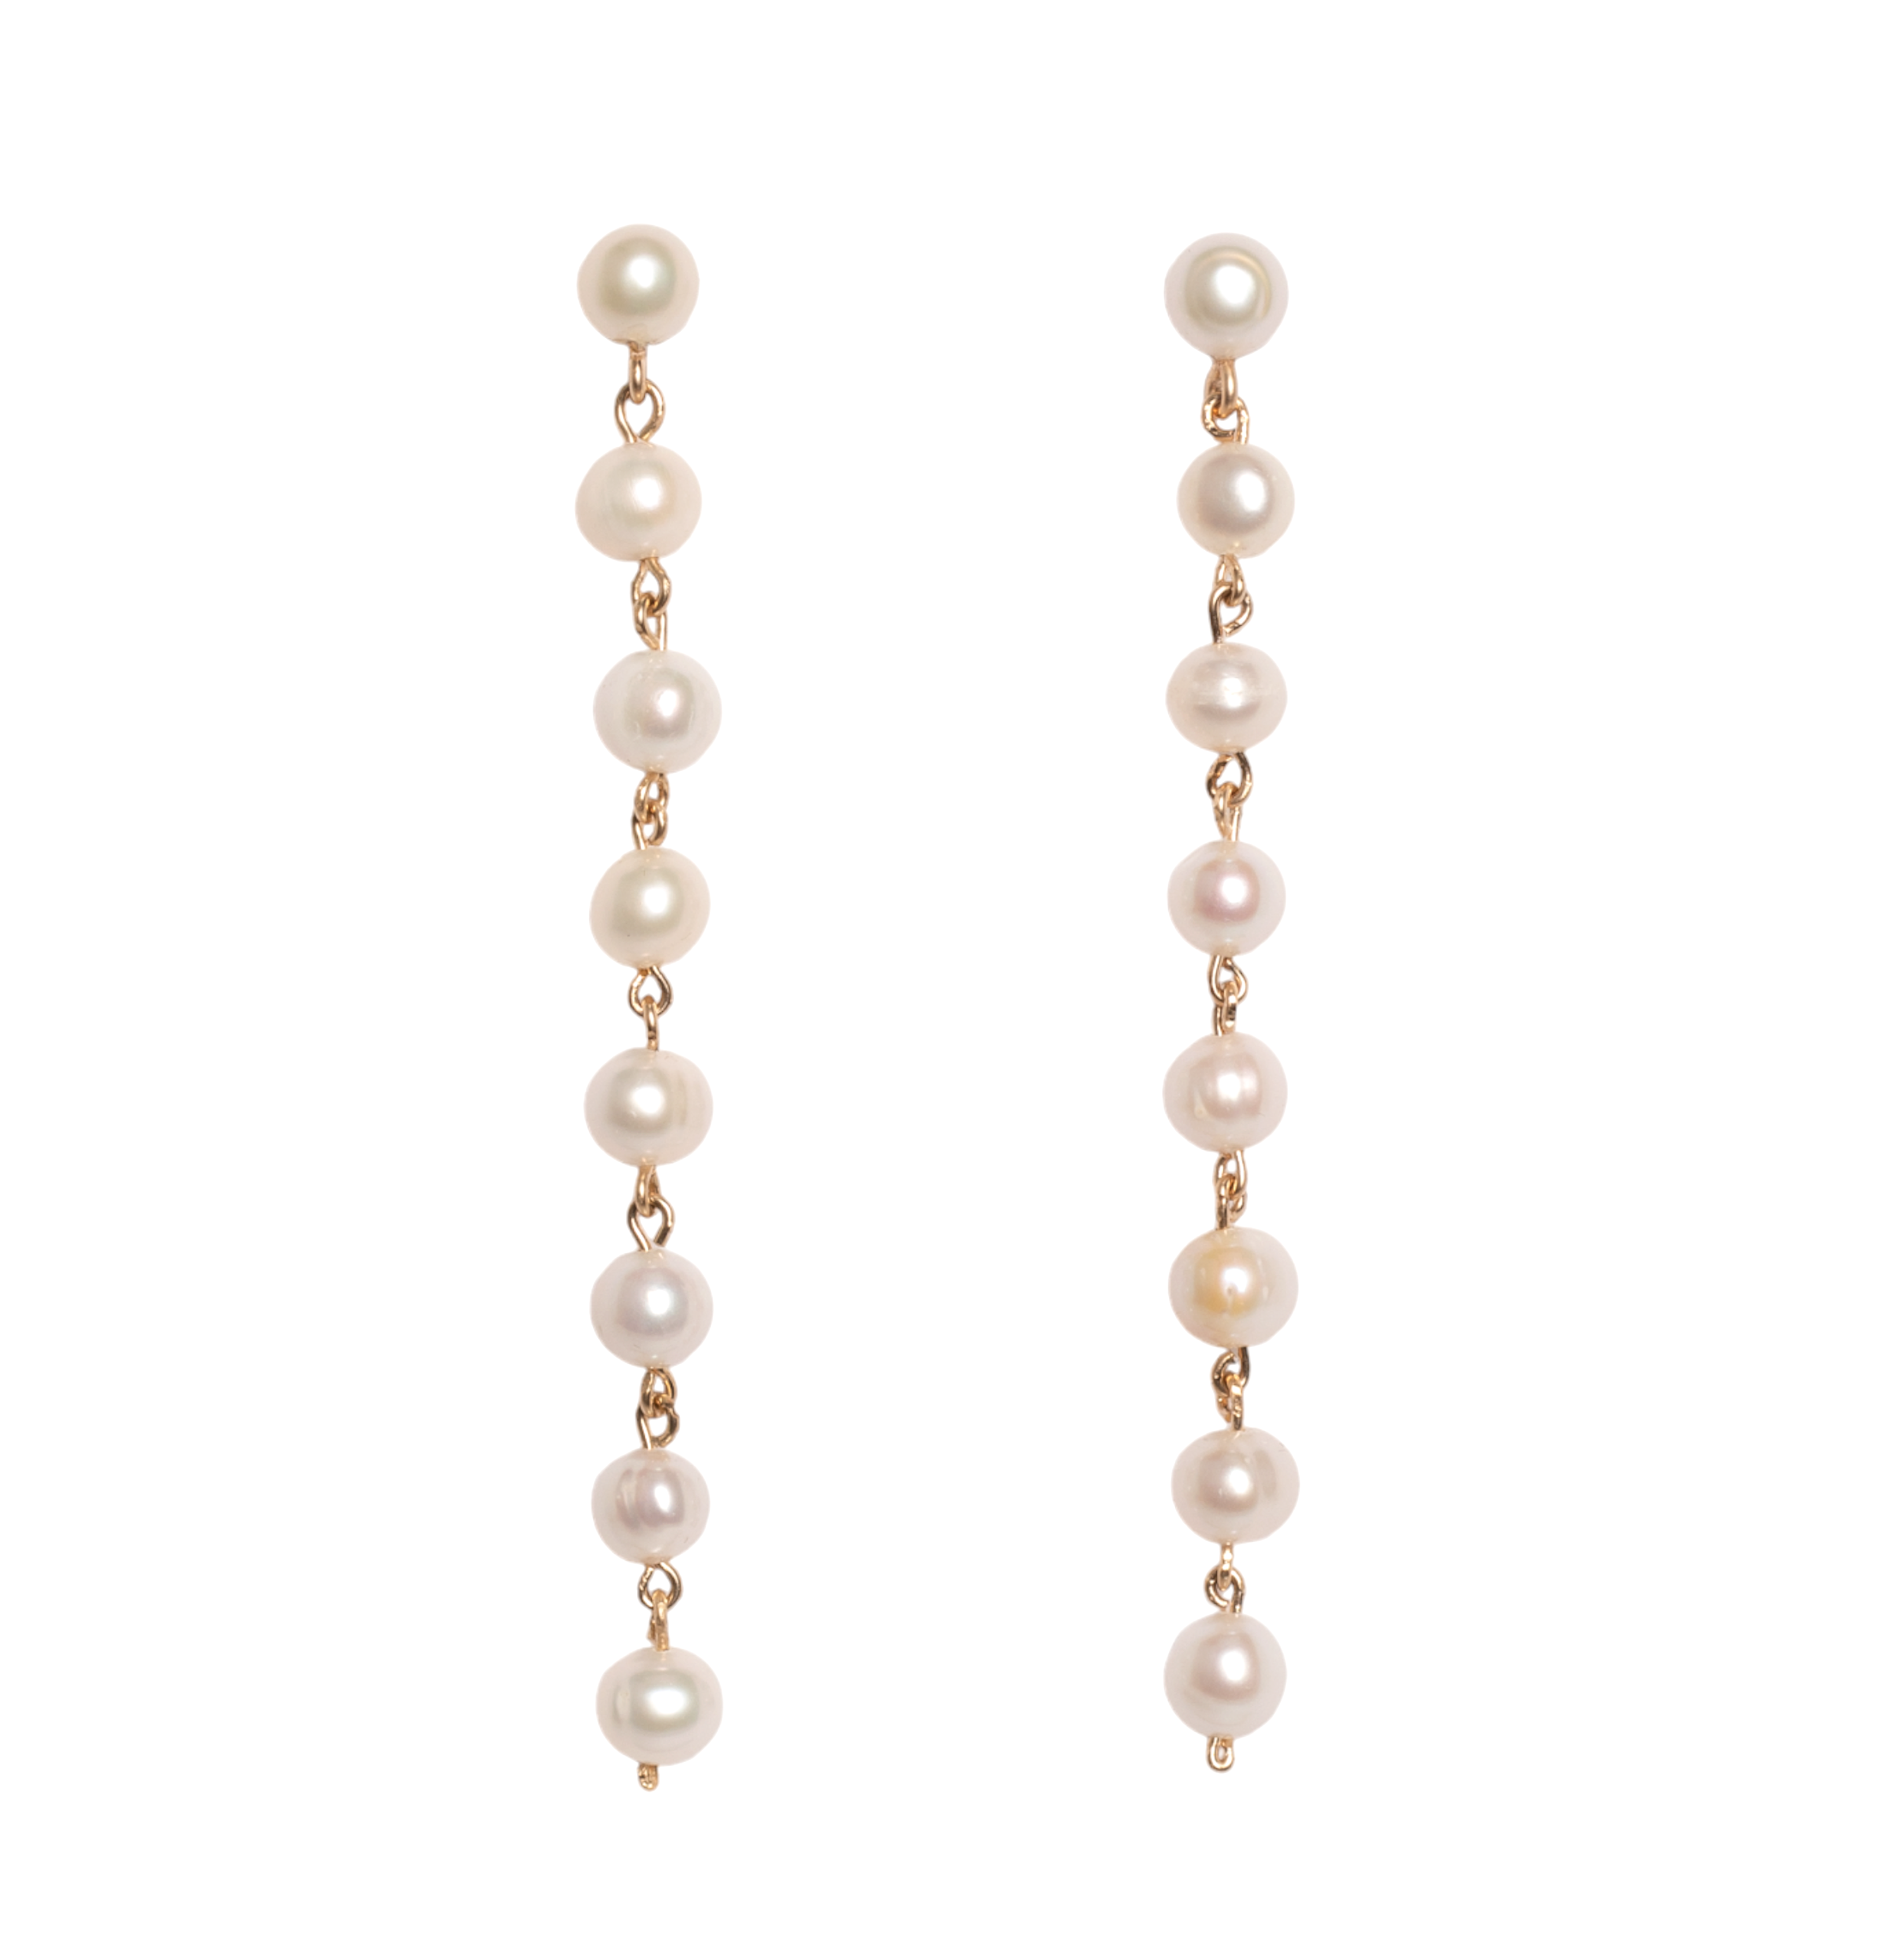 Margarita Pearls Earrings #9 (85mm) - Pearl Earrings TARBAY   